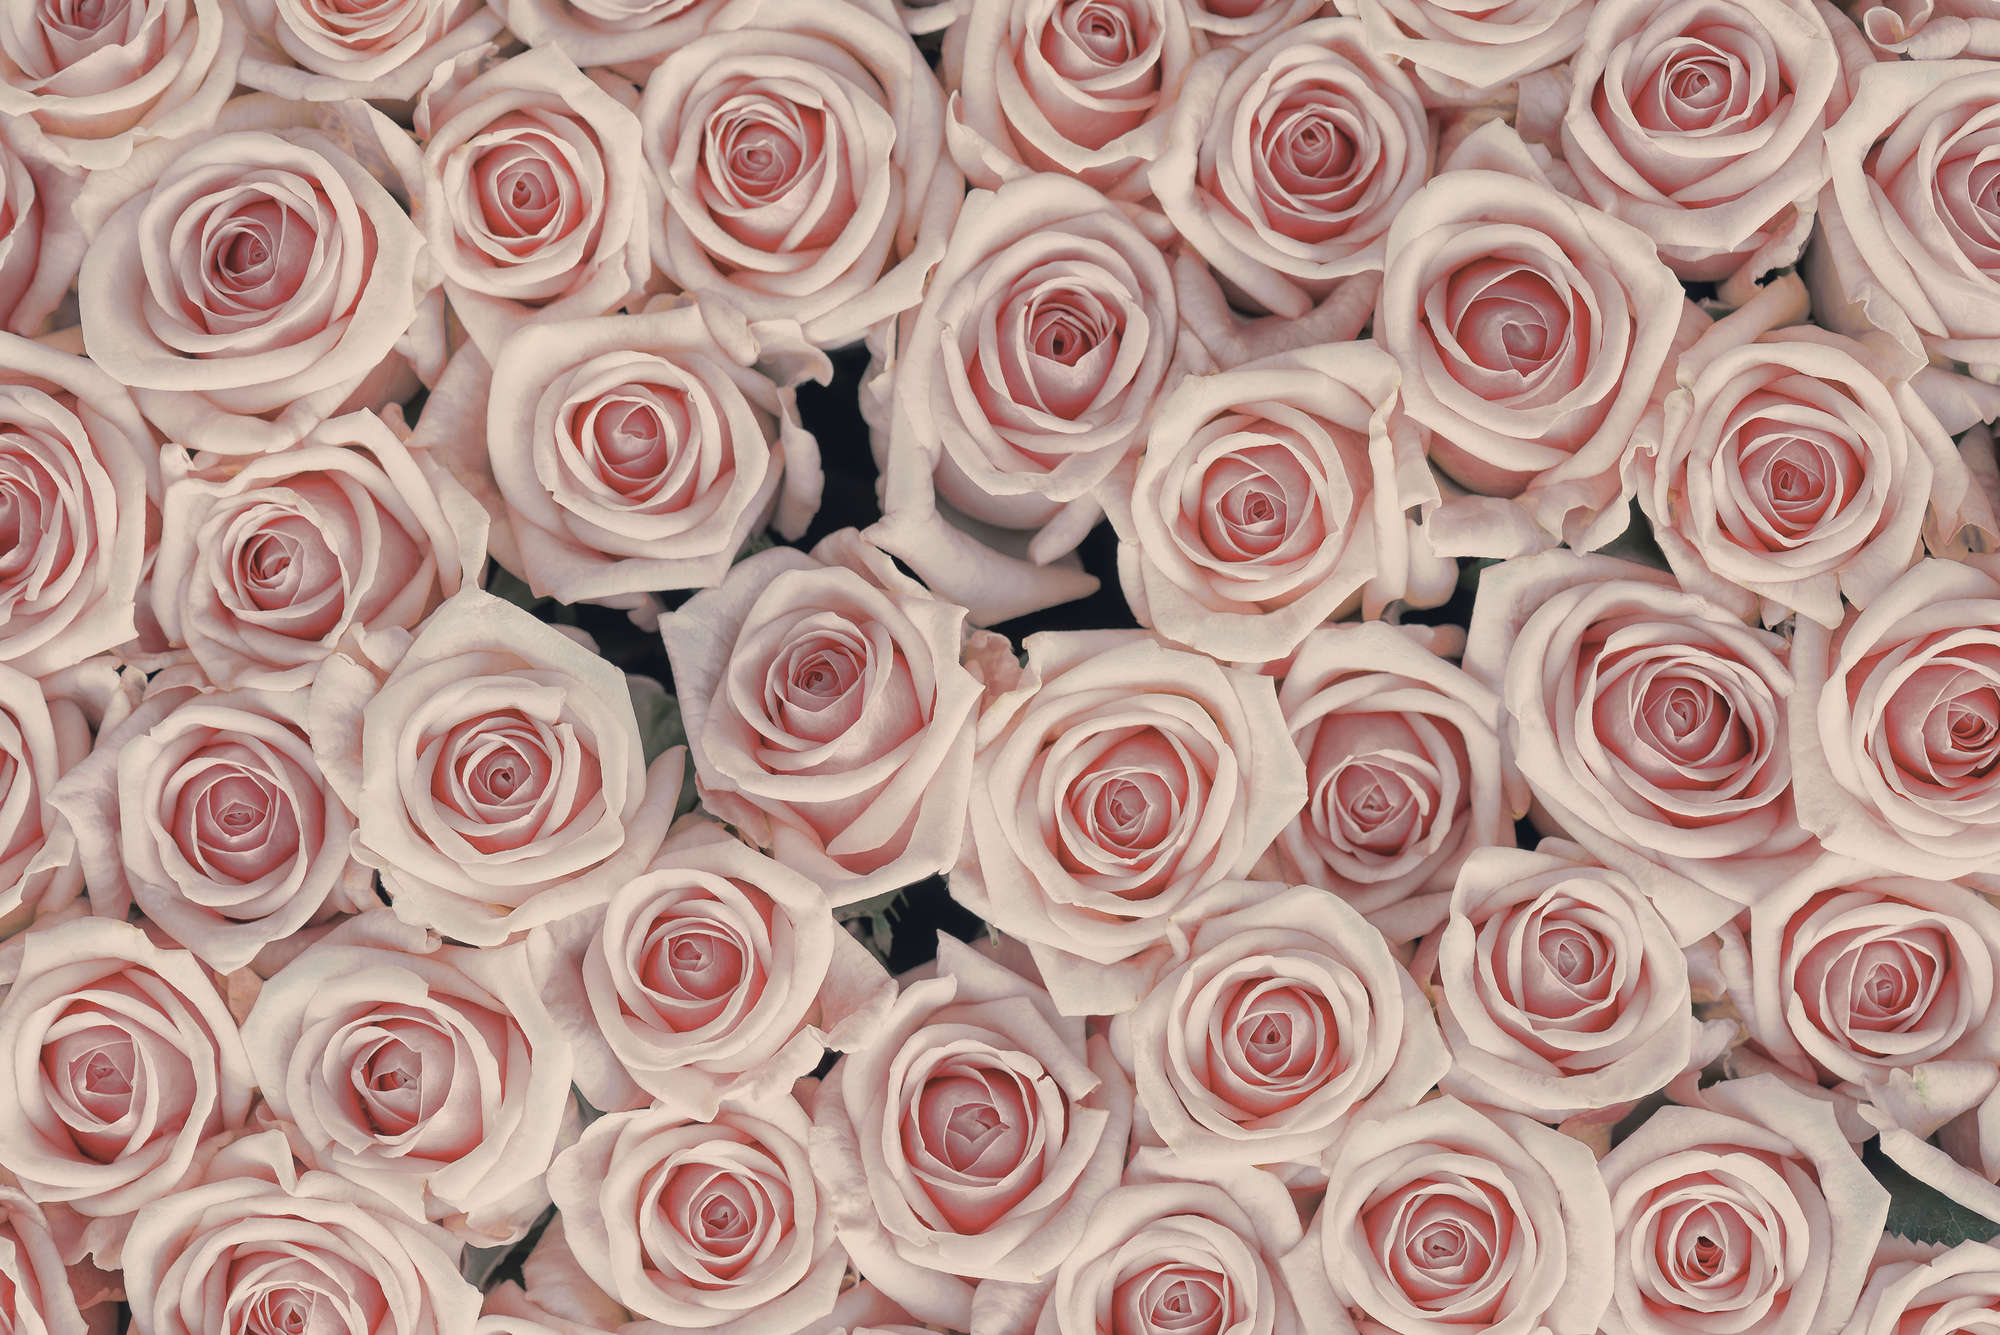             Papier peint végétal roses et blanches sur intissé lisse premium
        